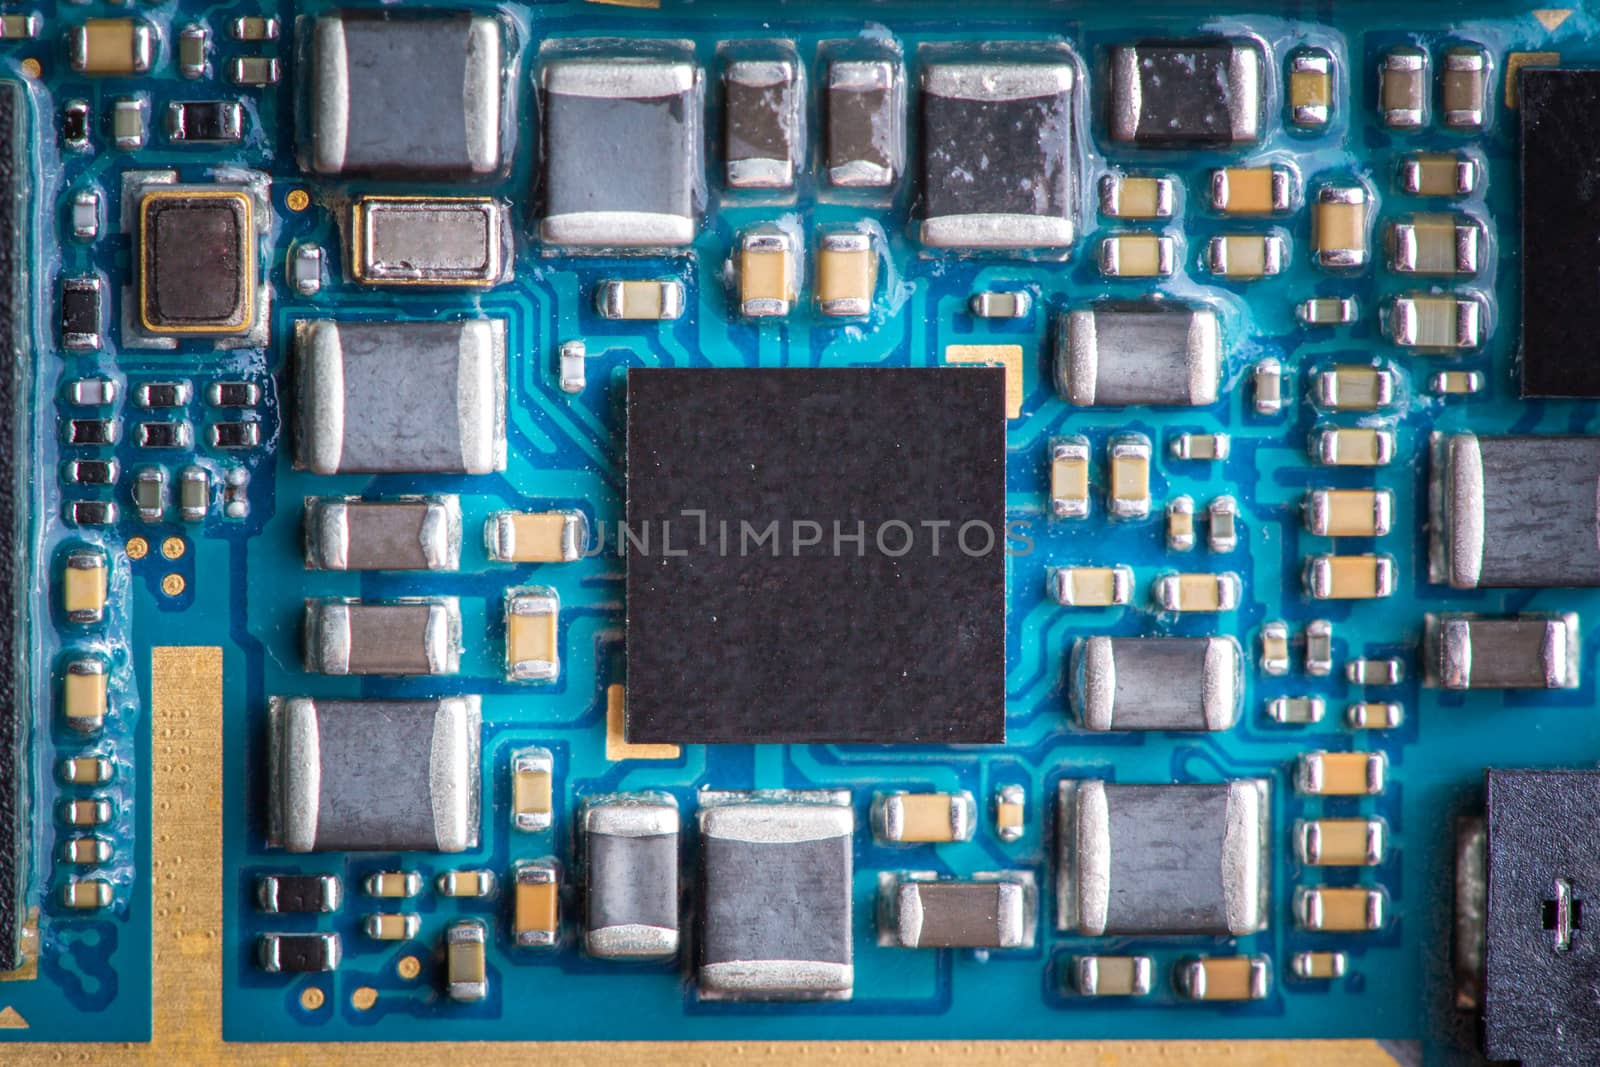 Closeup of phone micro circuit board - main chip, processor. by petrsvoboda91